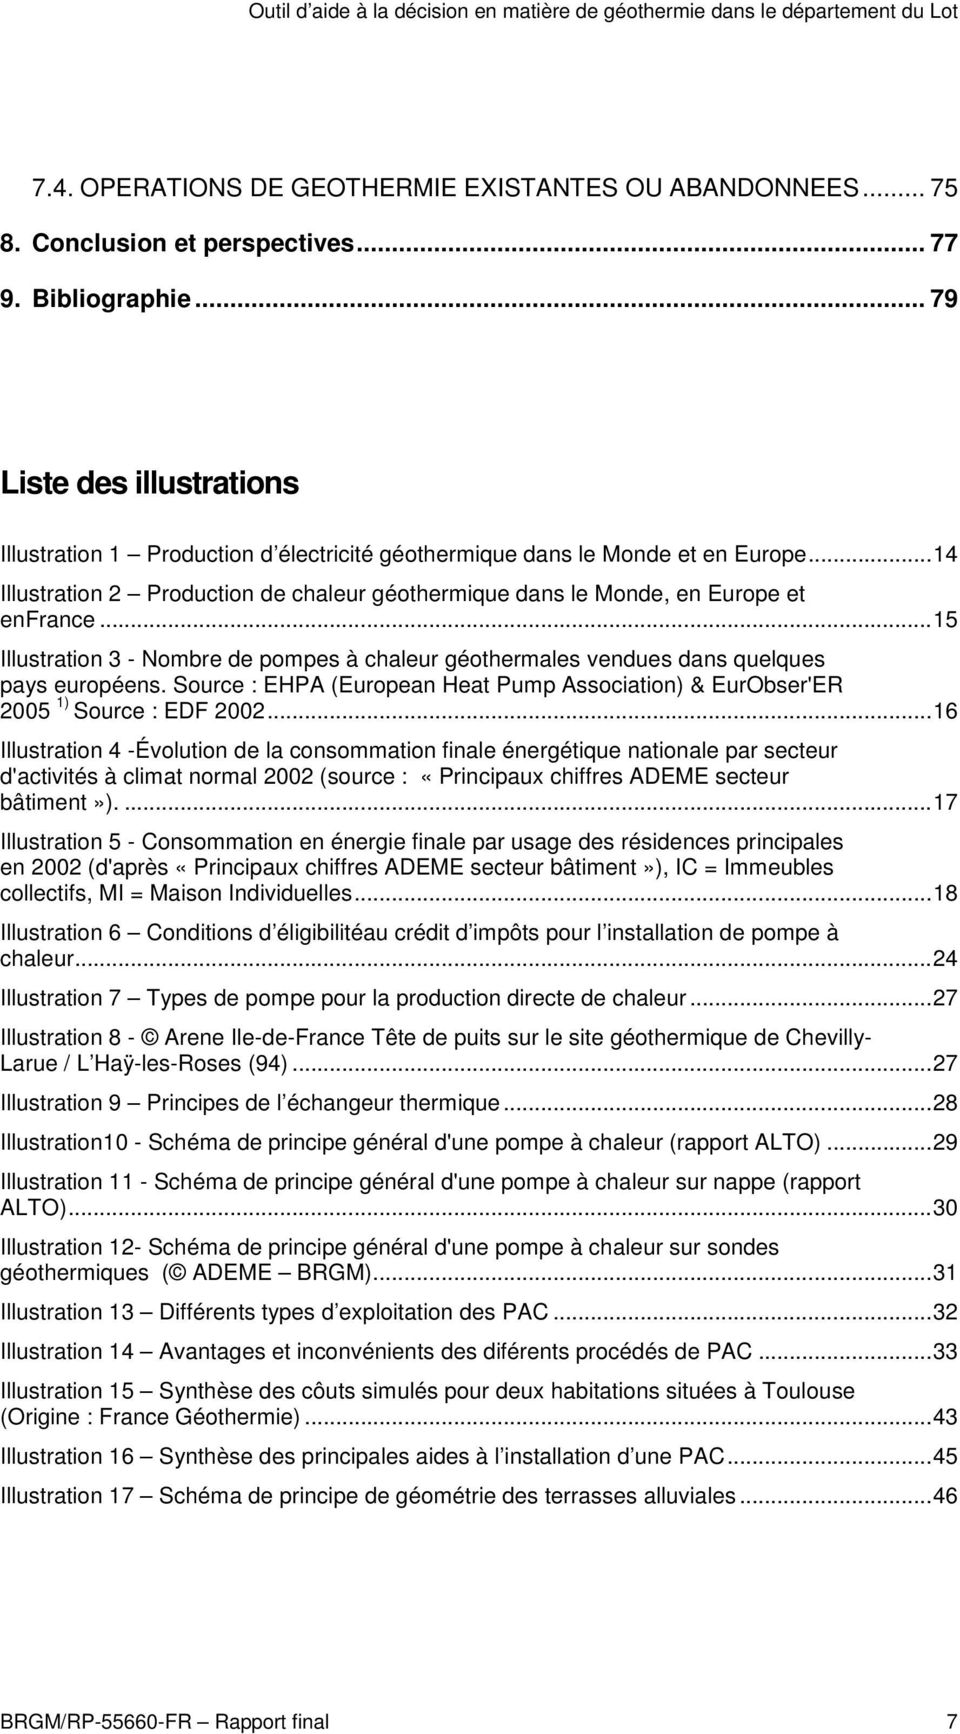 ..15 Illustration 3 - Nombre de pompes à chaleur géothermales vendues dans quelques pays européens. Source : EHPA (European Heat Pump Association) & EurObser'ER 2005 1) Source : EDF 2002.